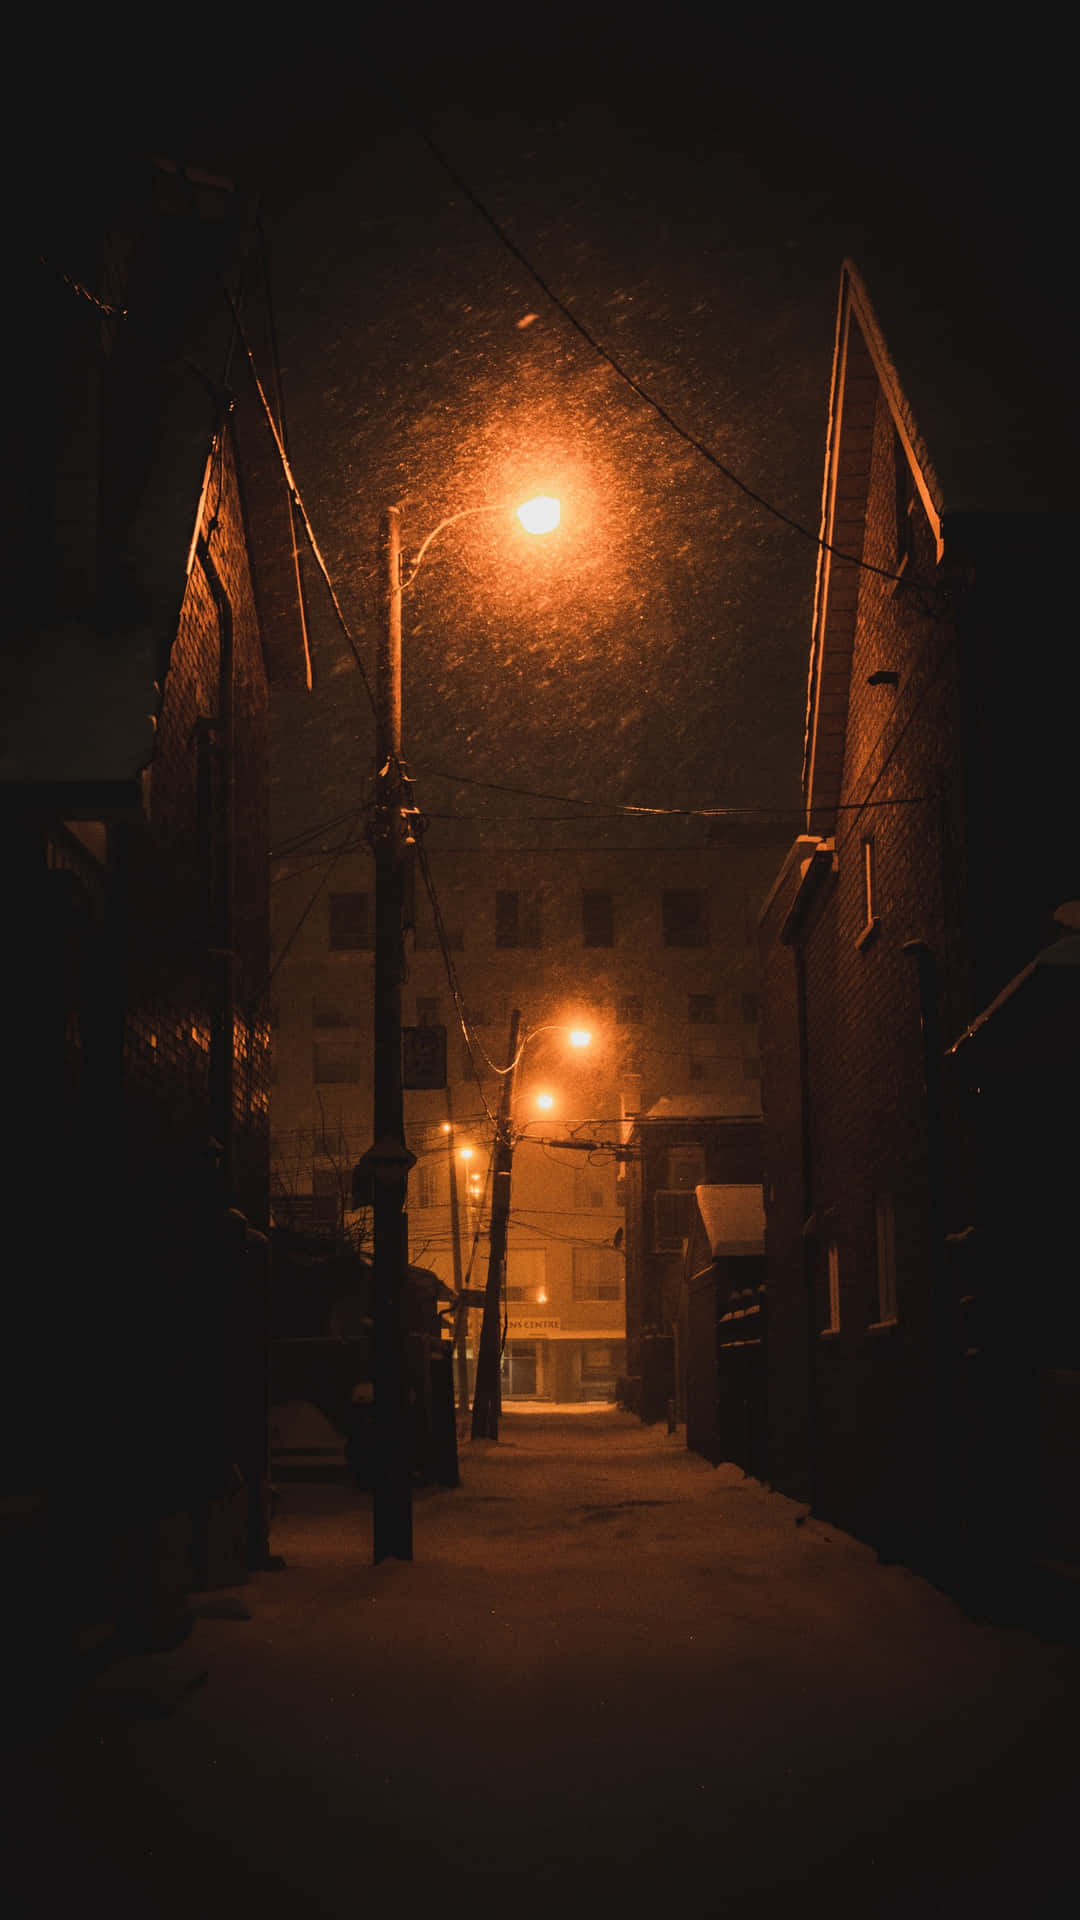 Vistanoturna De Uma Rua Tranquila Iluminada Por Postes De Luz Elétrica. Papel de Parede